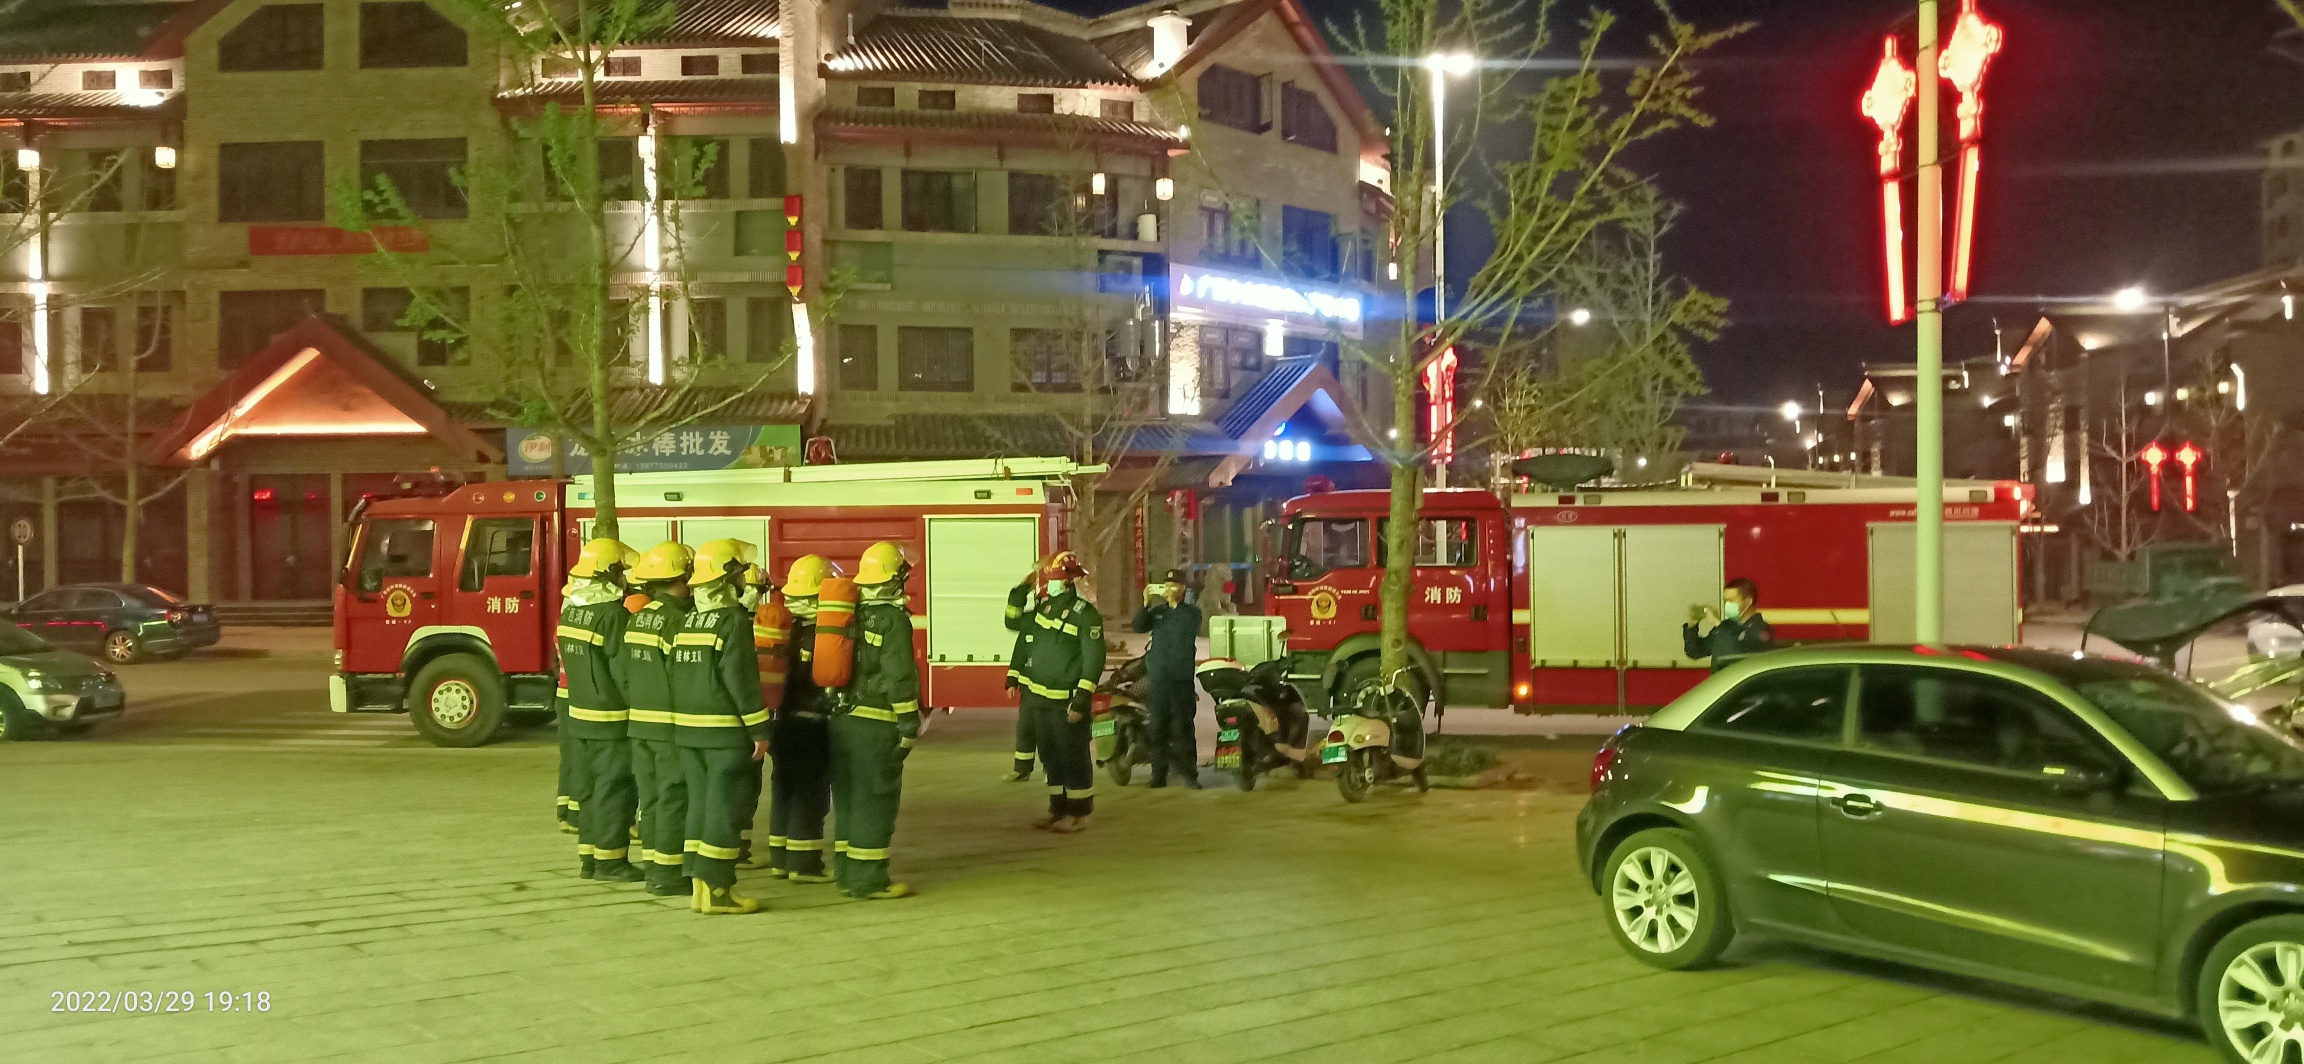 昨晚偶遇消防人员在油茶小镇的六福超市演练消防821 / 作者:陈爱国 / 帖子ID:294073